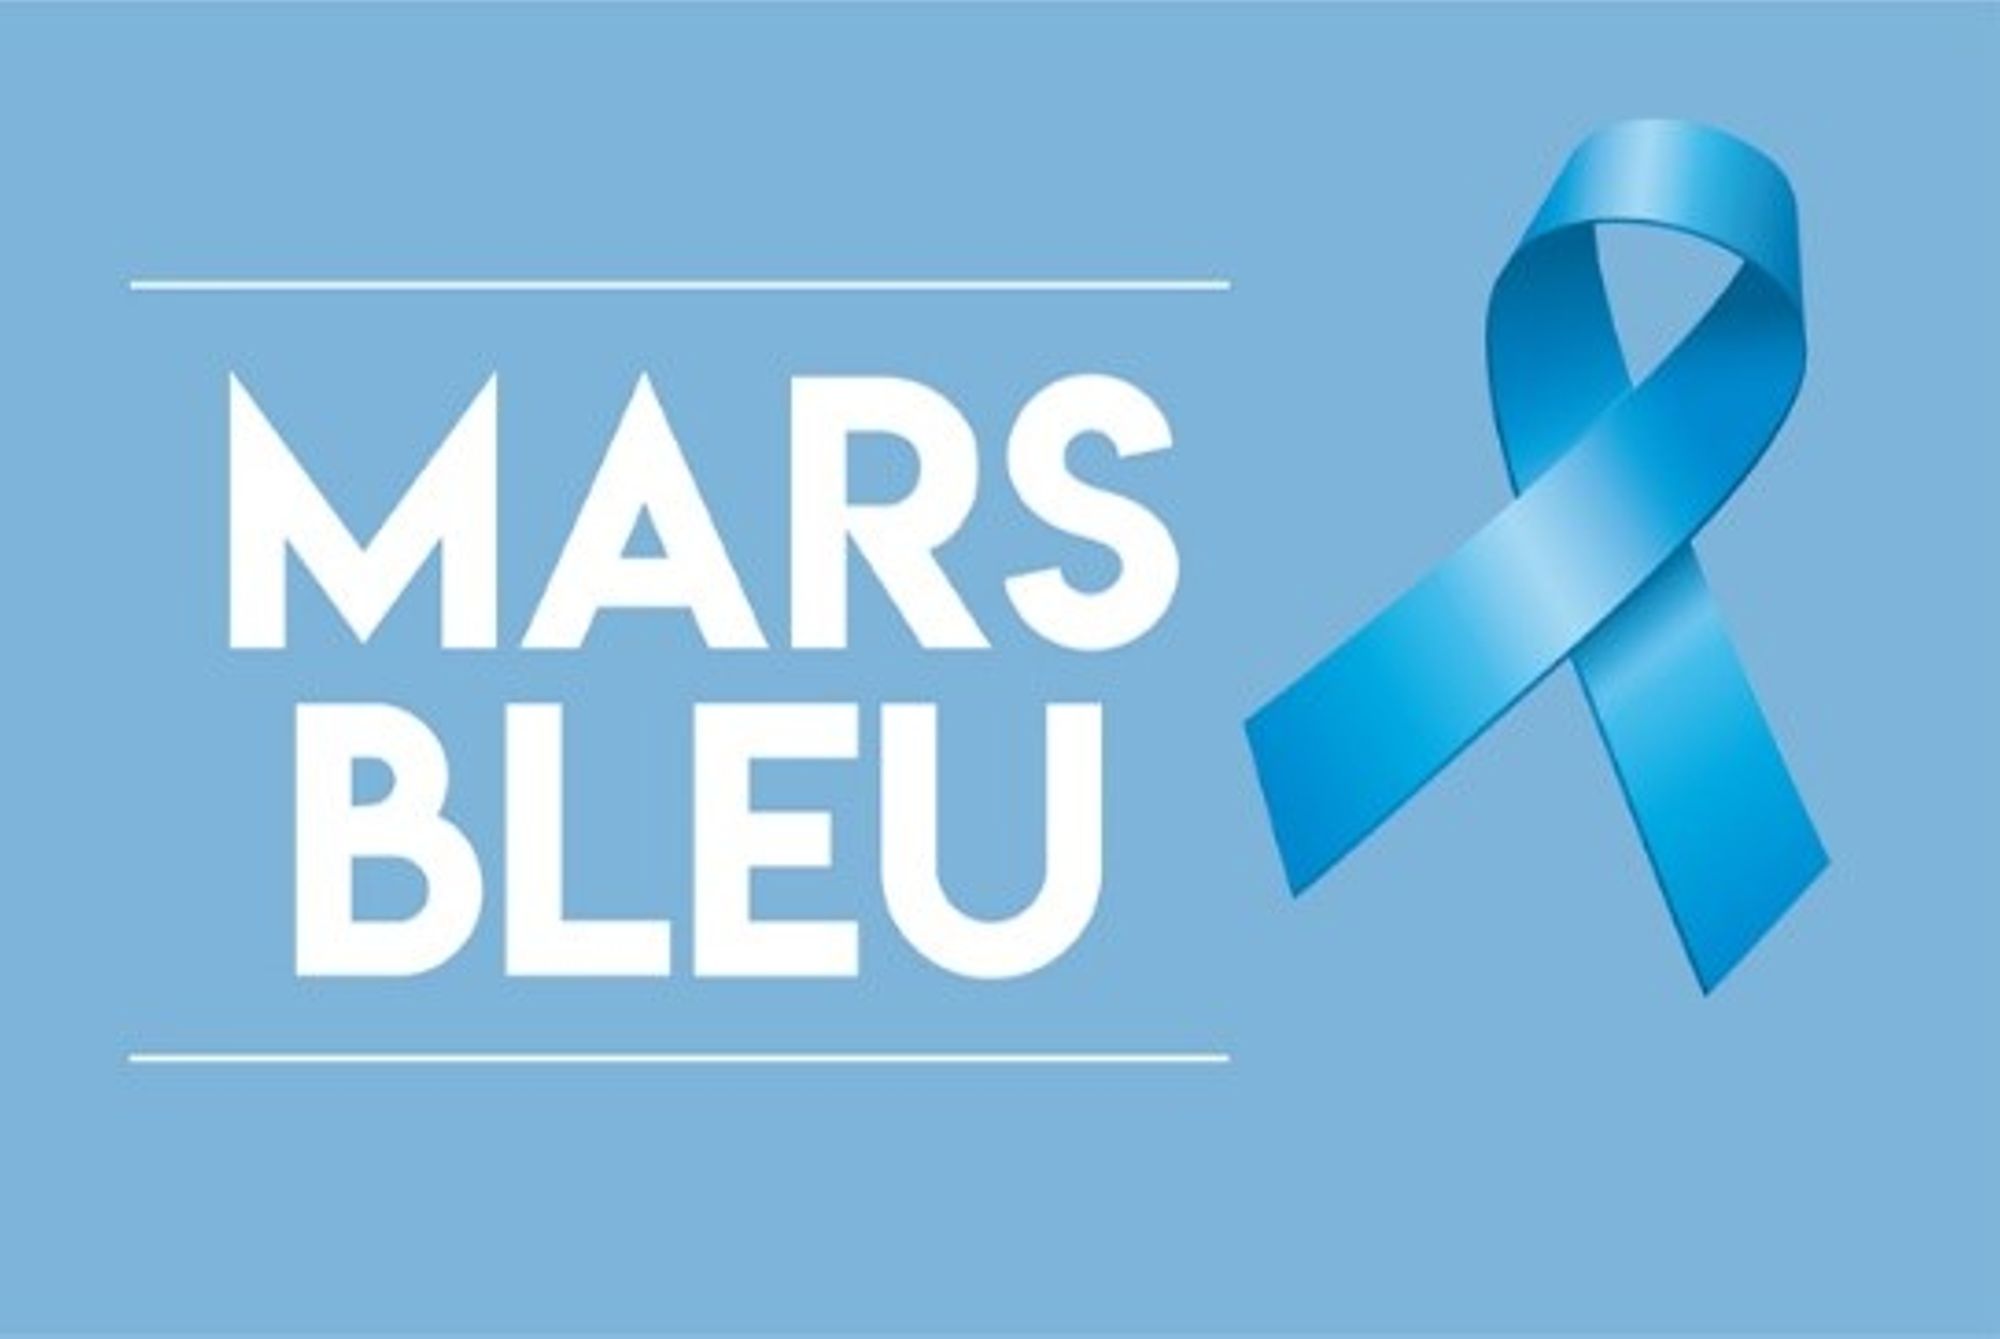 MARS BLEU (2) - Jeudi 28 mars : Venez vous renseigner lors de la journée d’informations sur le cancer colorectal